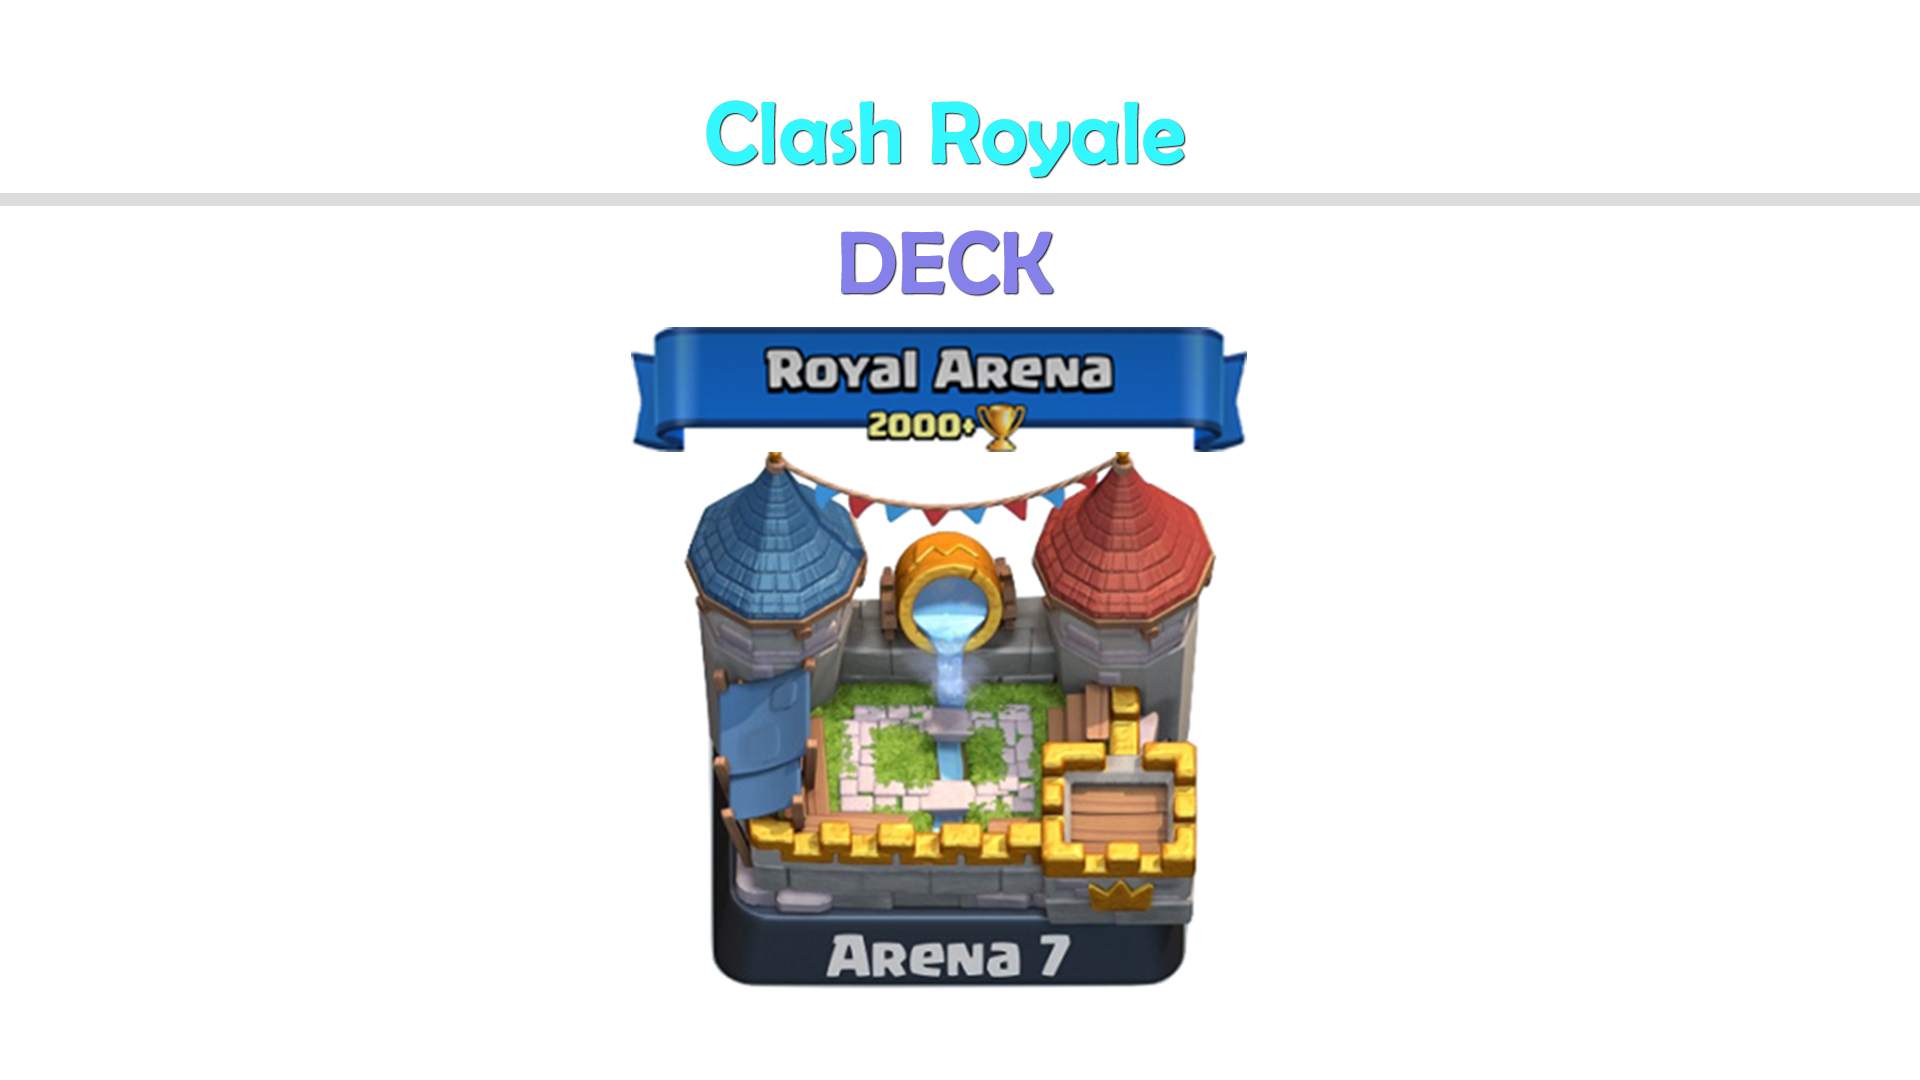 Recensione Deck Arena 7 Clash Royale